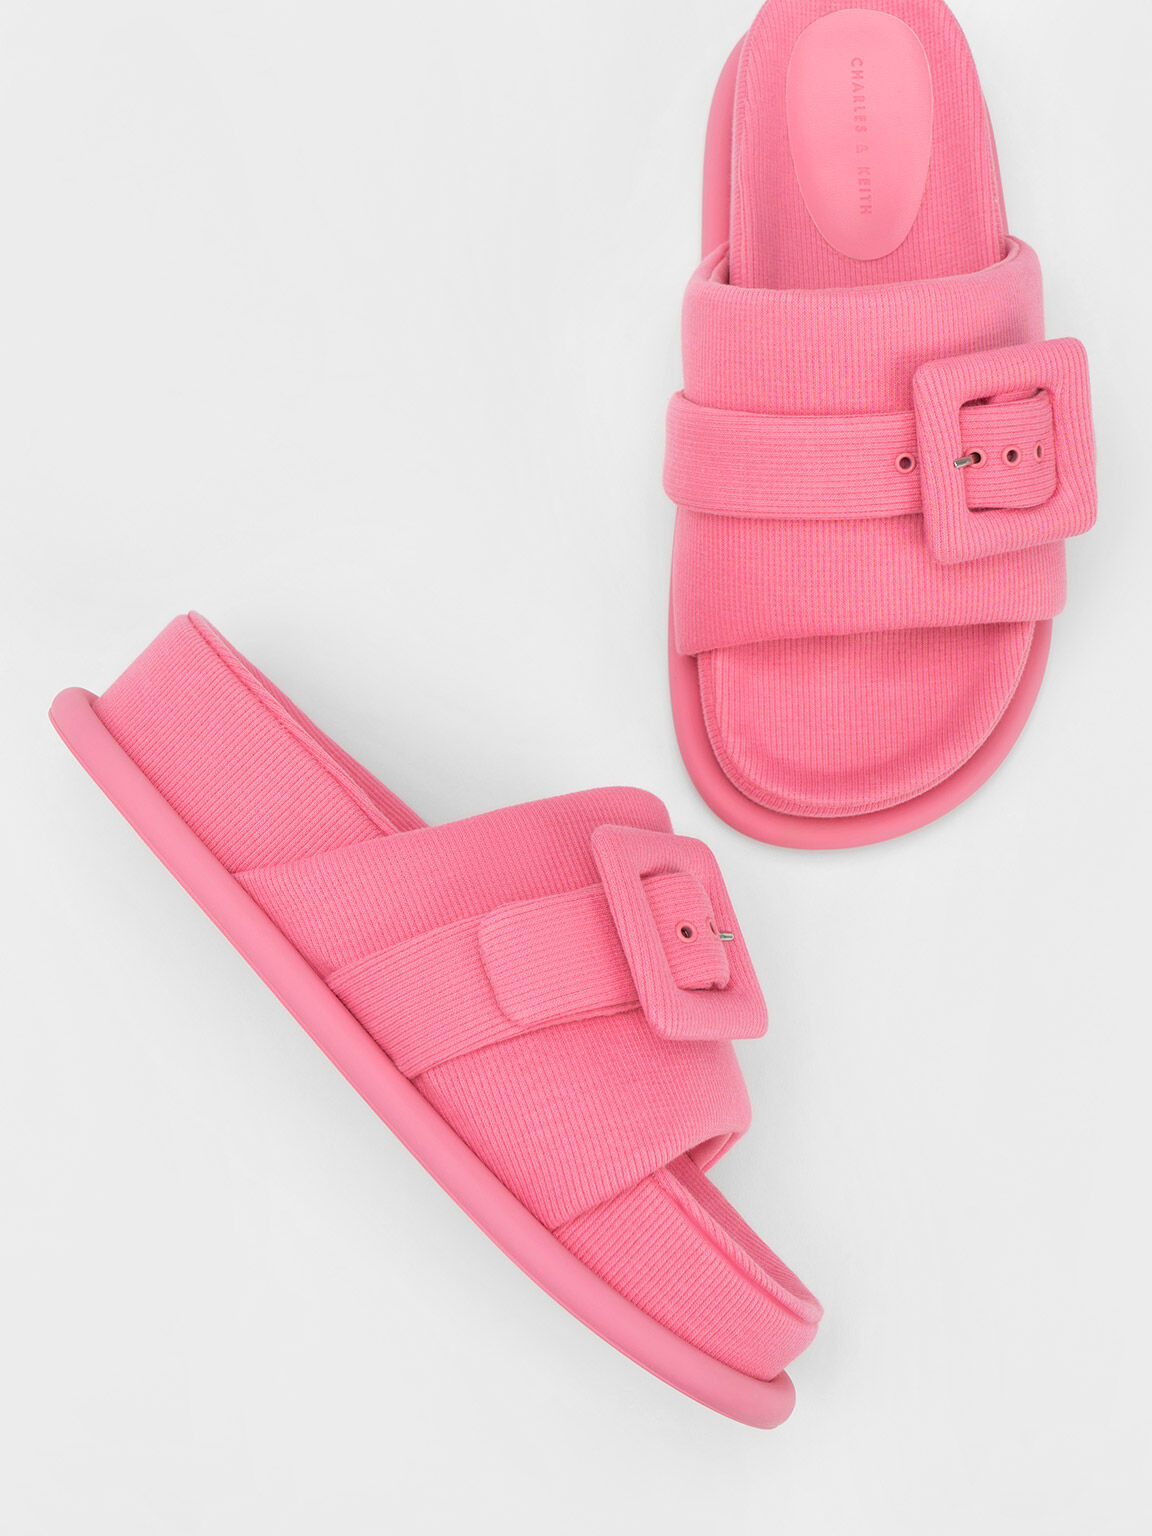 Sandal Slide Buckled Sinead Woven, Pink, hi-res